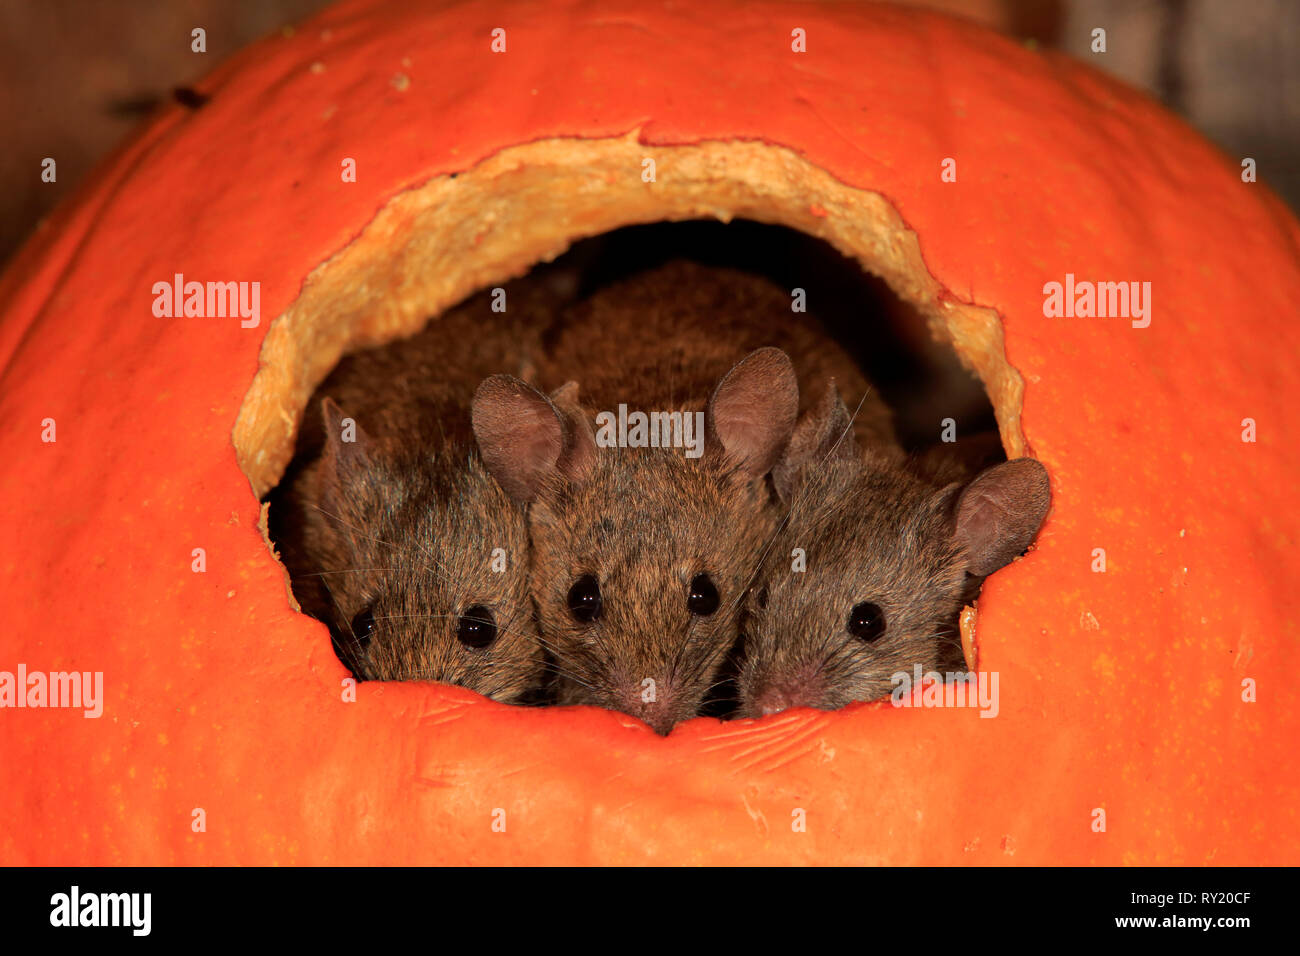 Los ratones de la casa, Renania Palatinado, Alemania, Europa (Mus musculus) Foto de stock